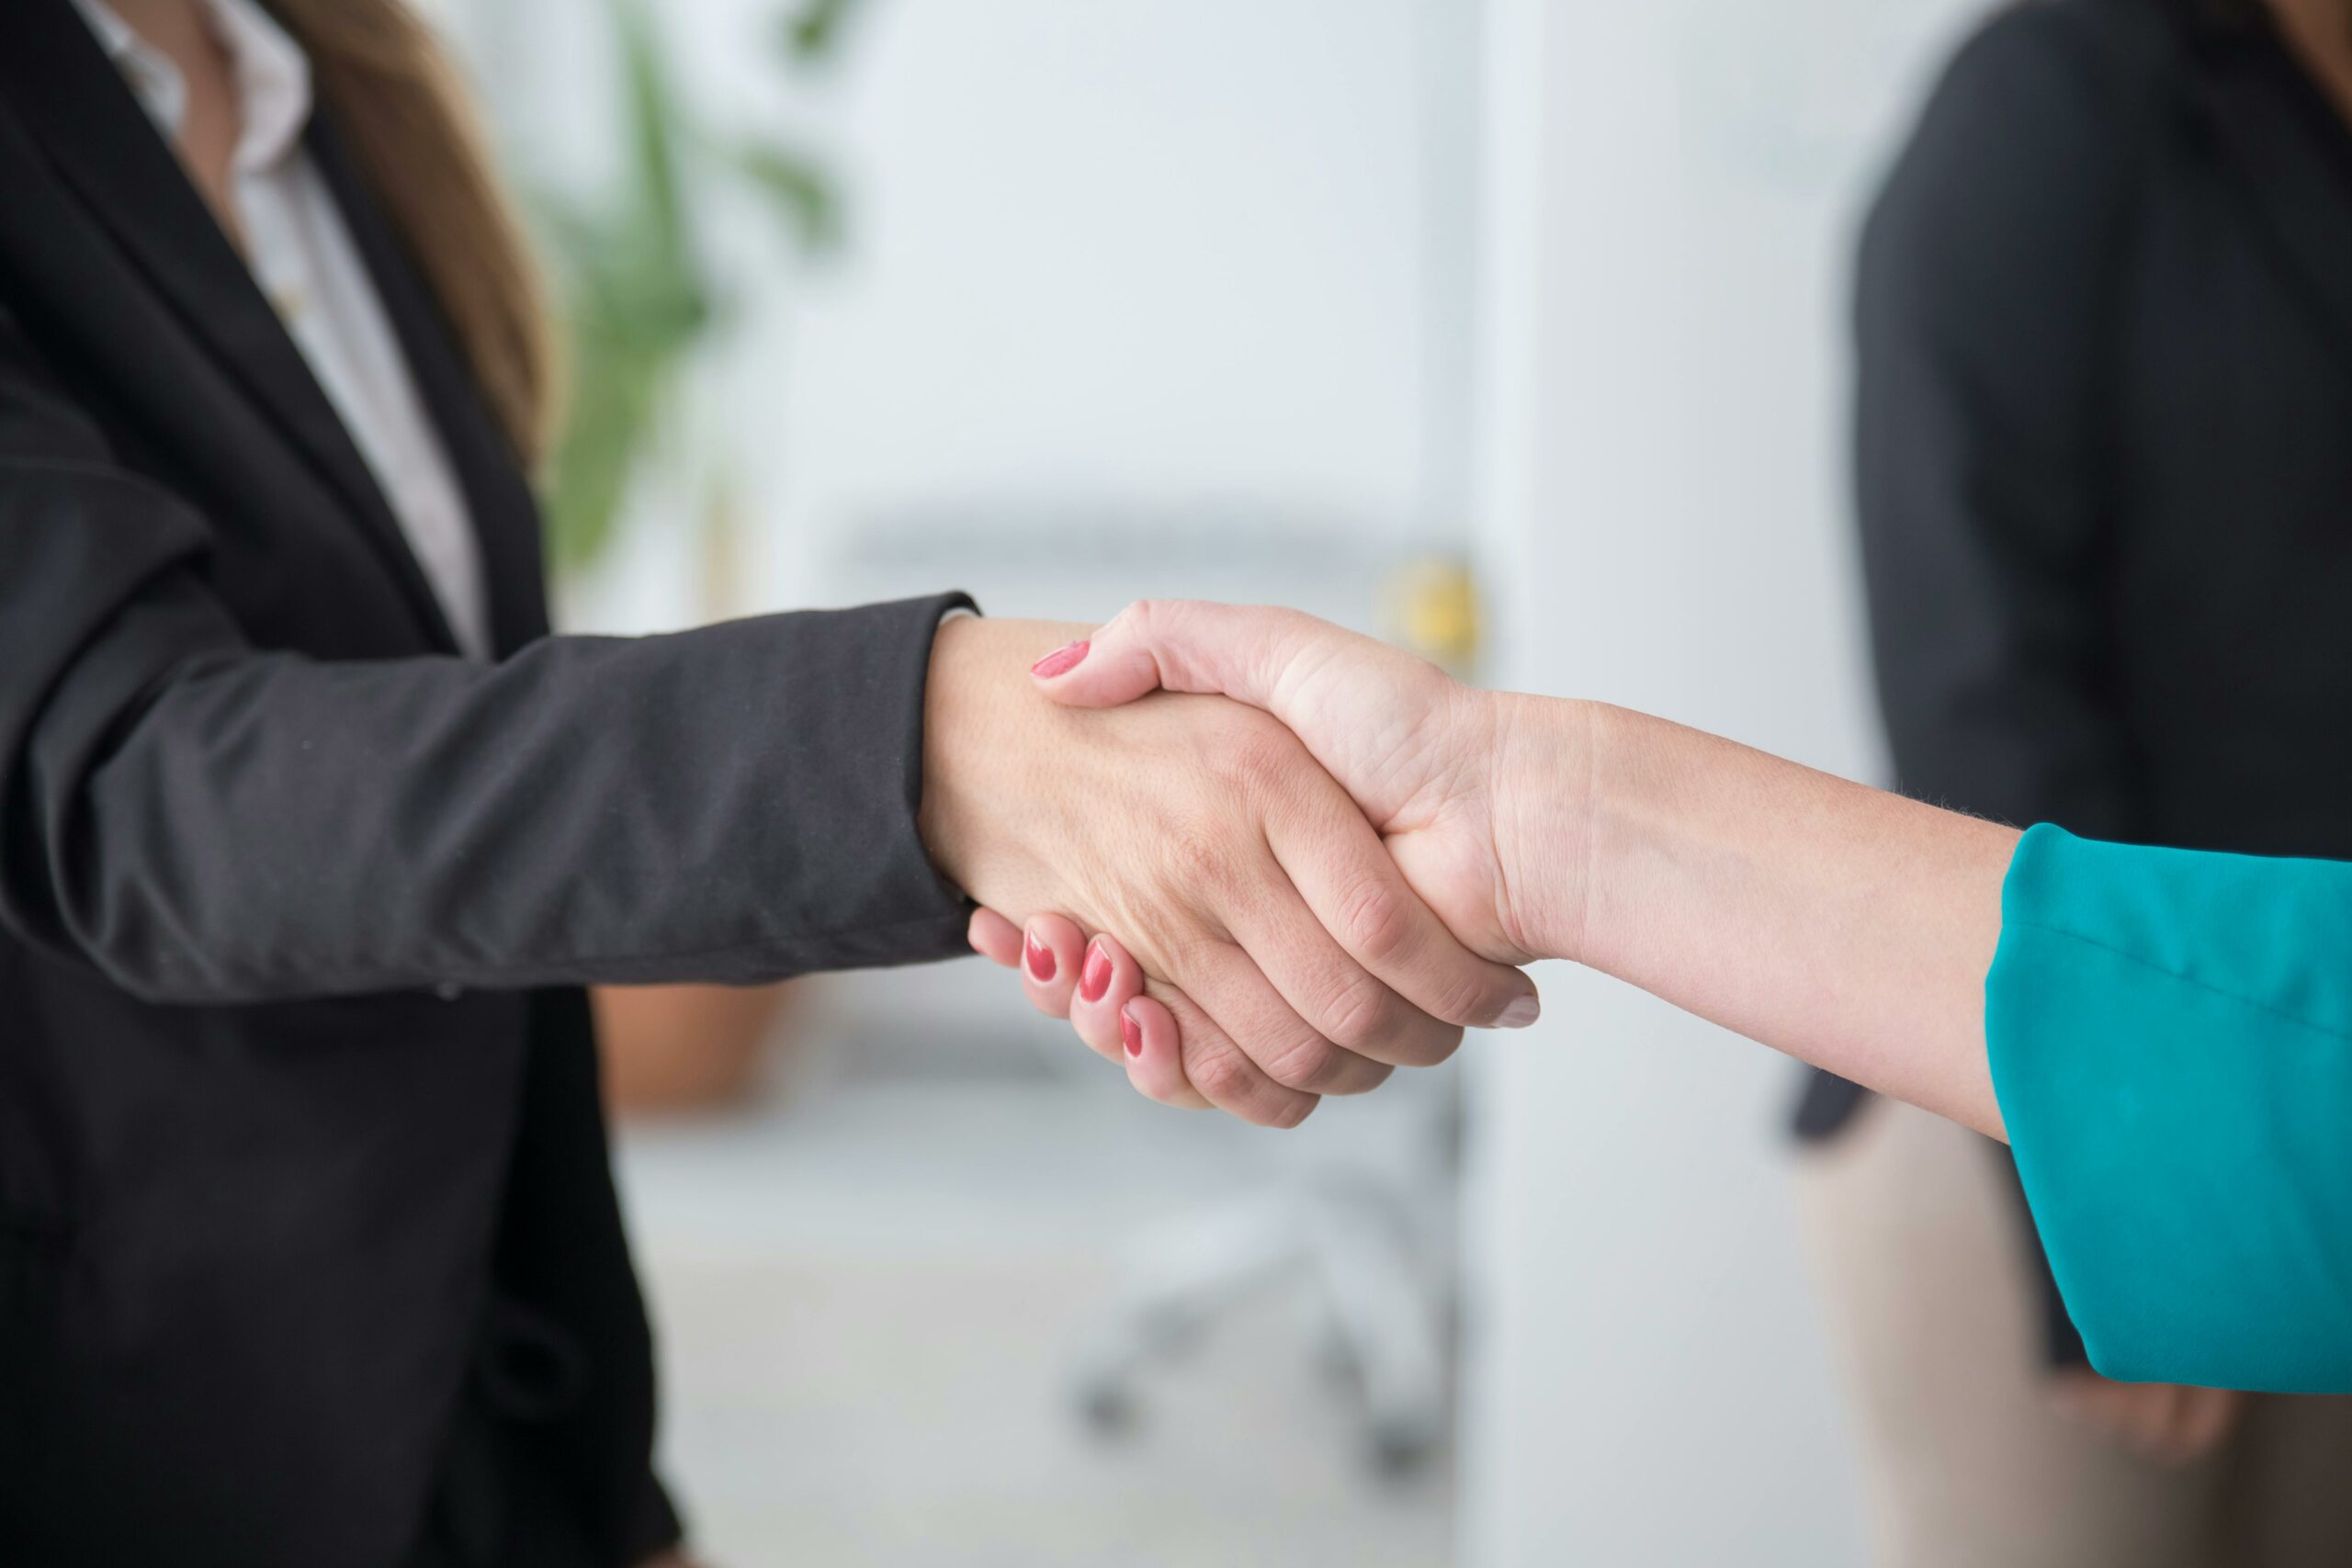 Poignée de main entre deux professionnelles dans un bureau, symbolisant un accord ou une introduction formelle.